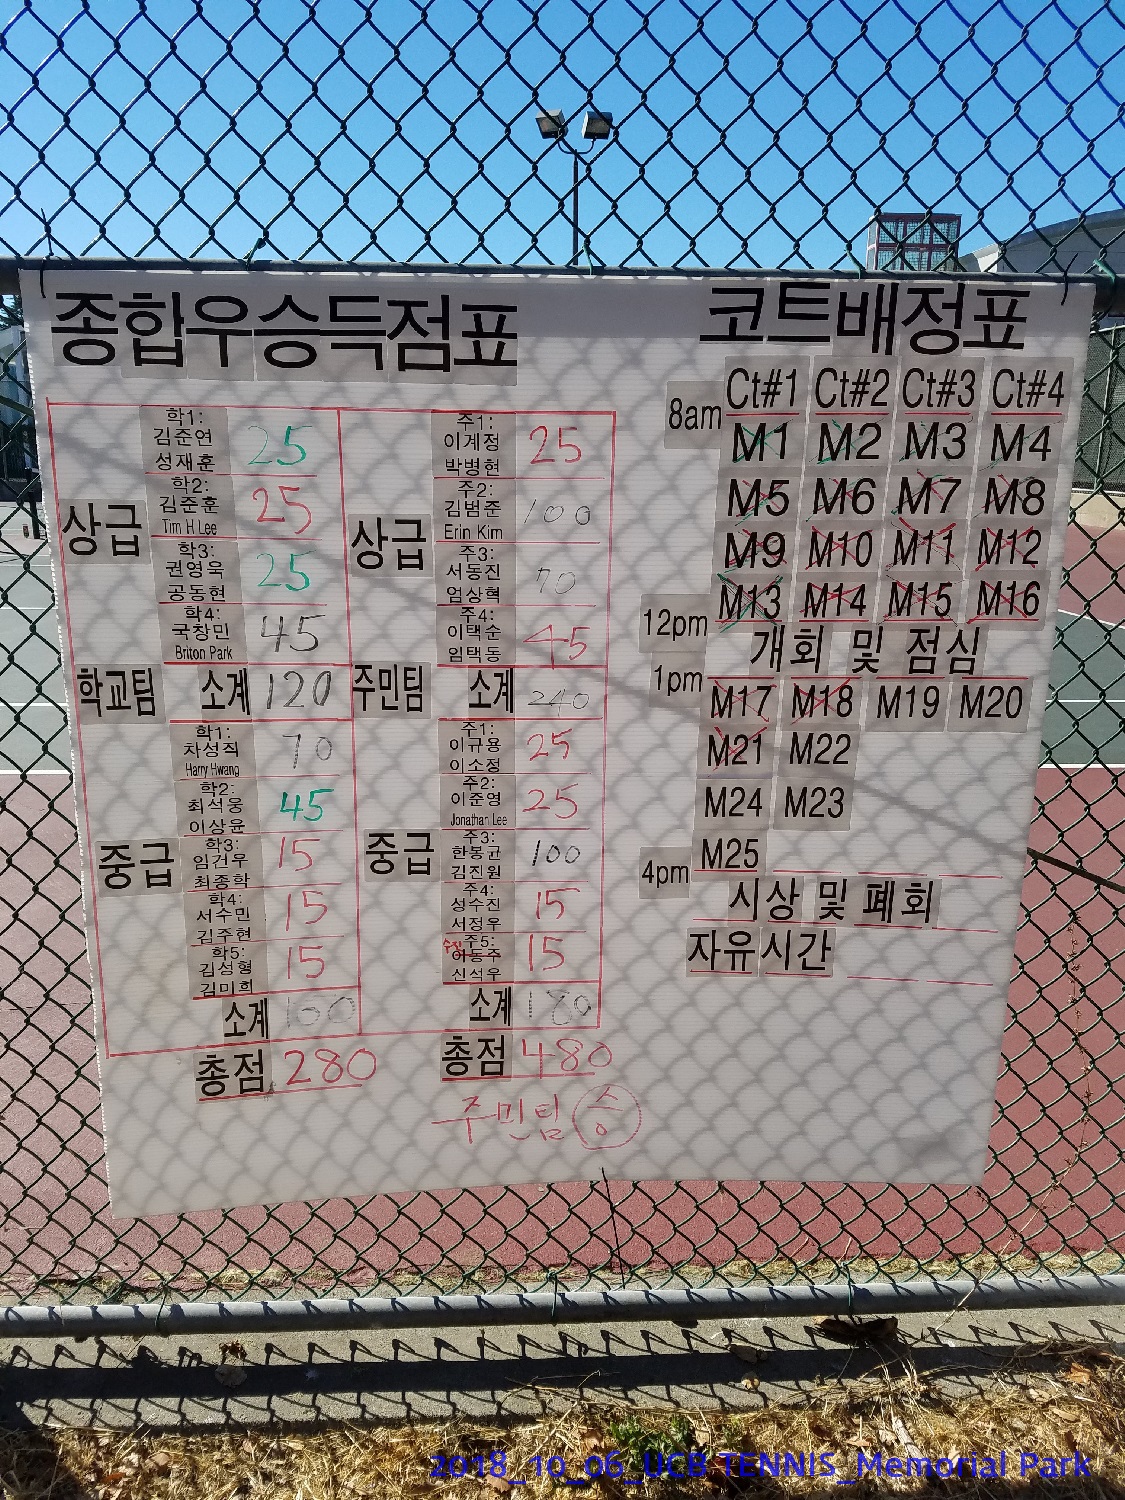 resized_2018_10_06_UCB Tennis at Memorial Park_152035.jpg